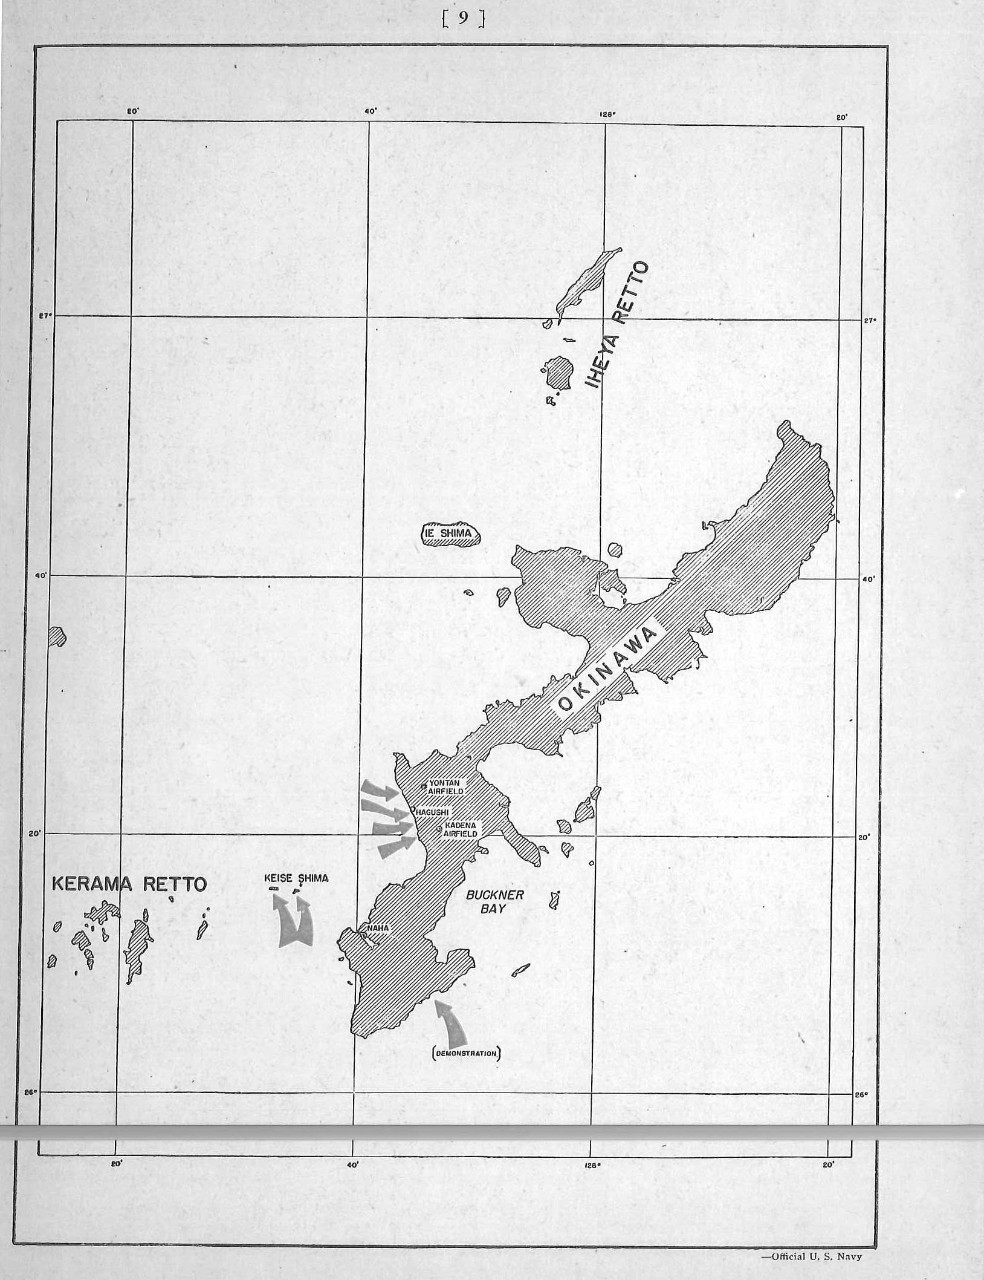 Map of Okinawa